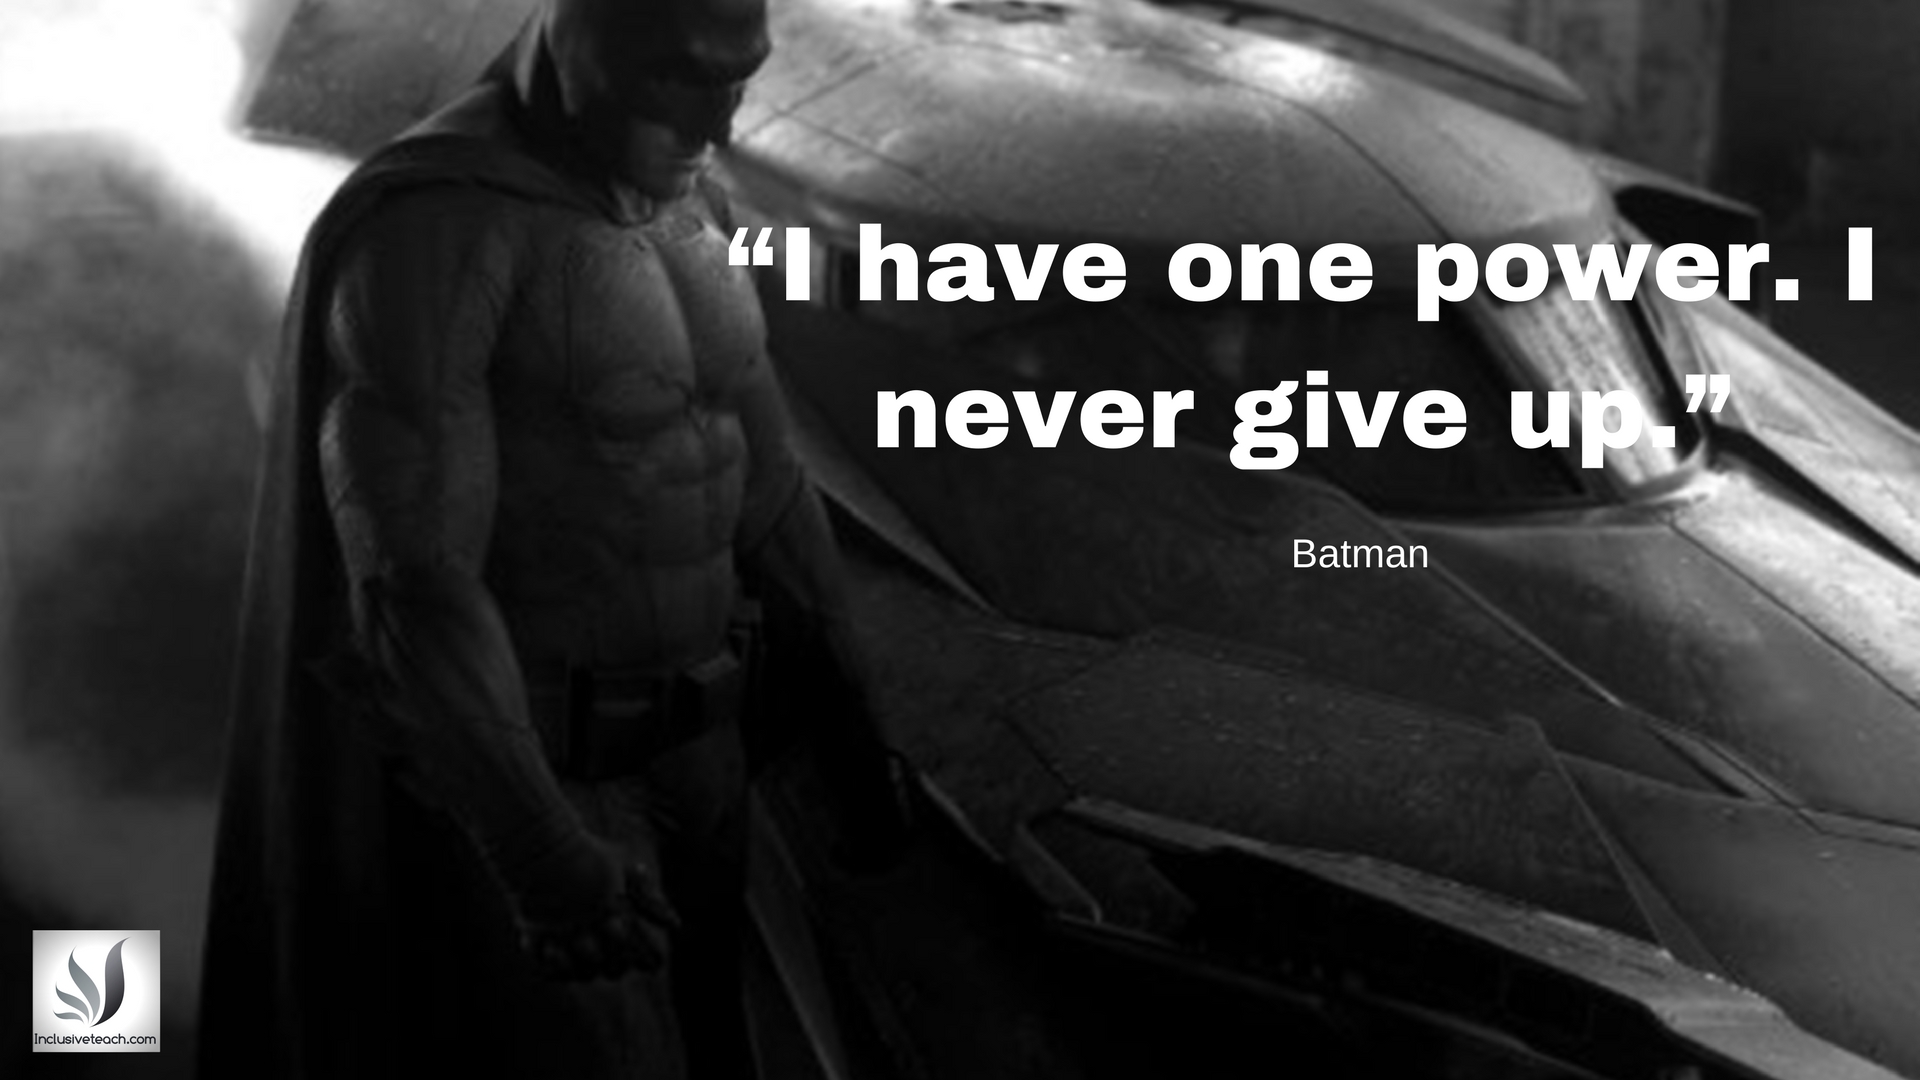 Batman quote education